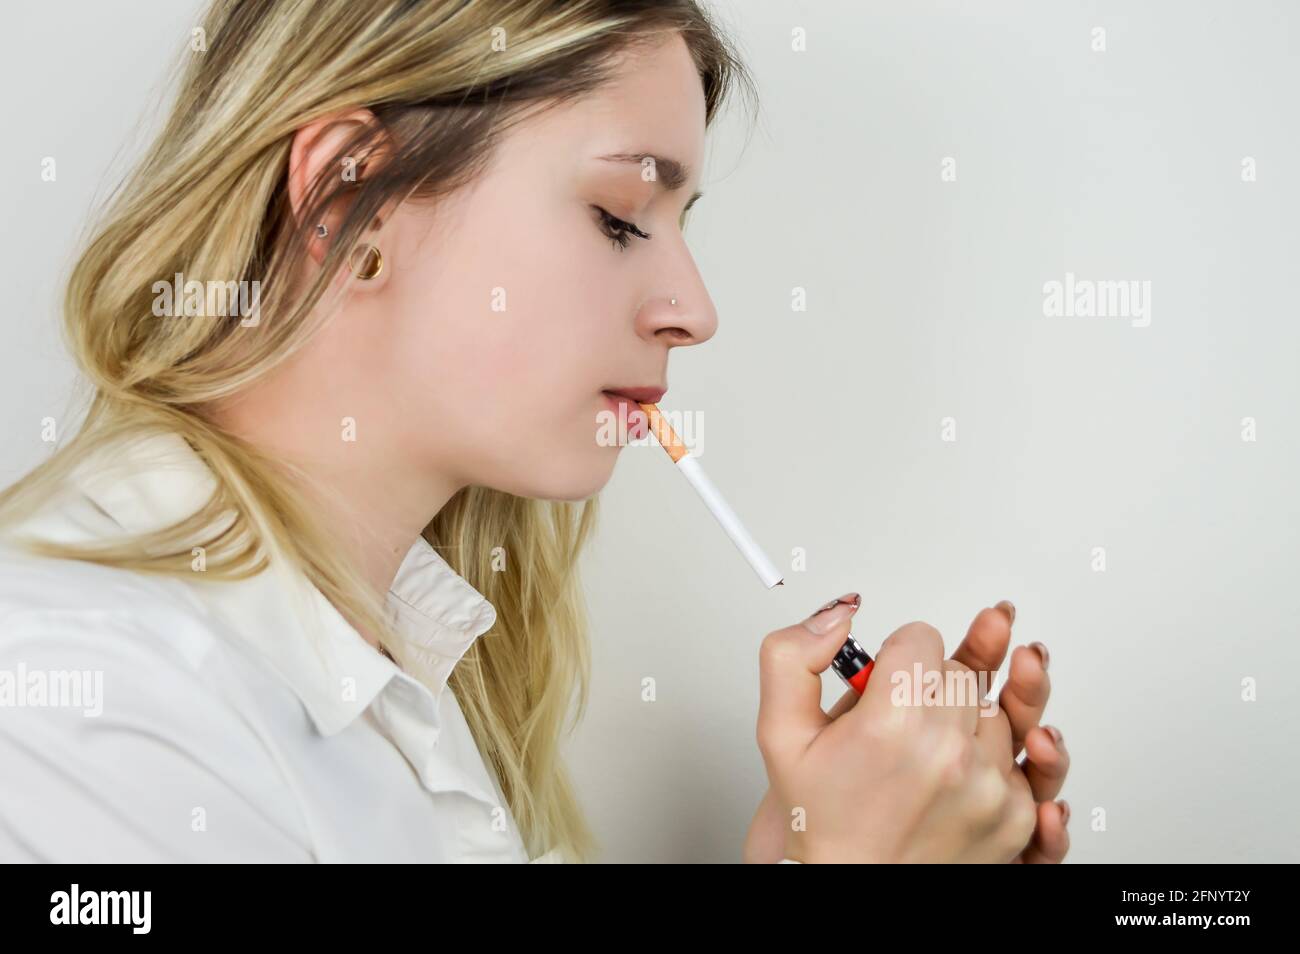 Porträt einer schönen jungen blonden Frau, die sich vorbereitet Um eine Zigarette anzuzünden Stockfoto